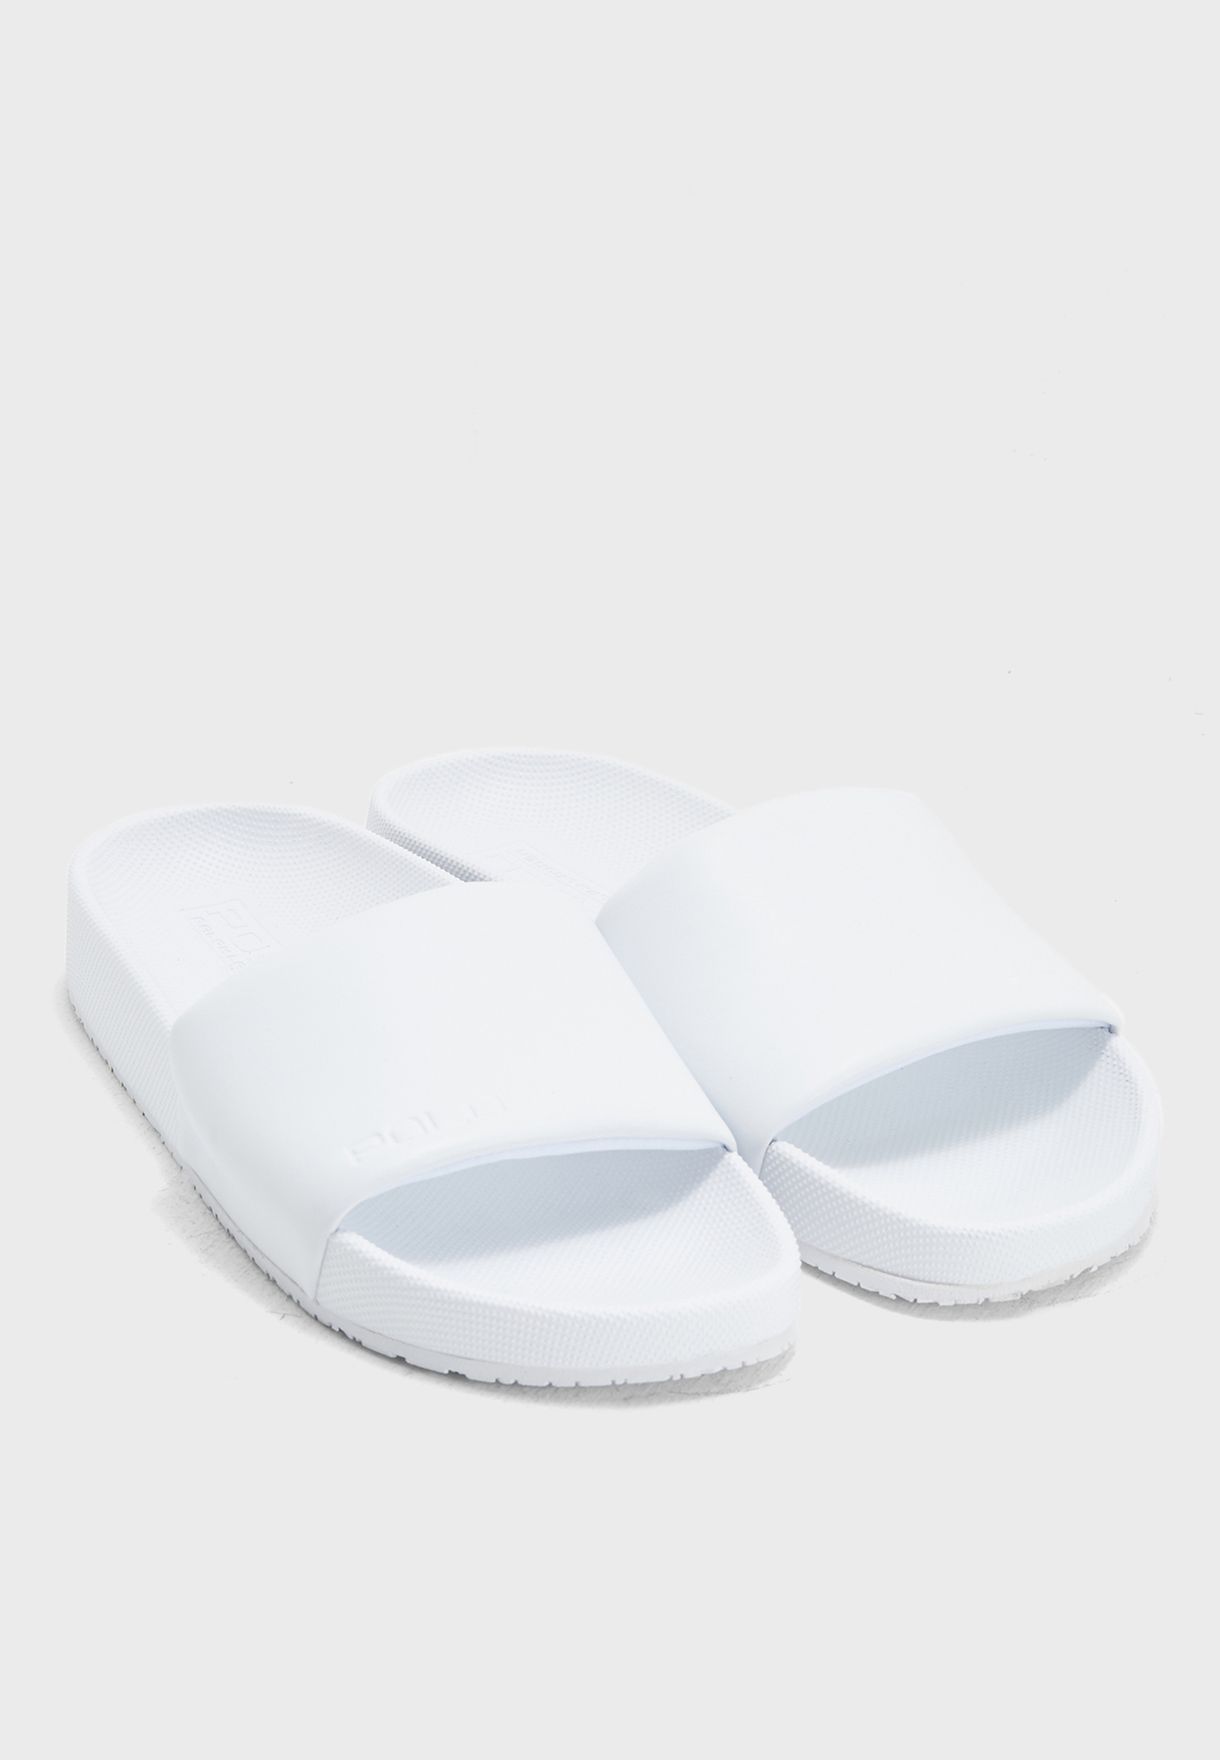 white polo flip flops